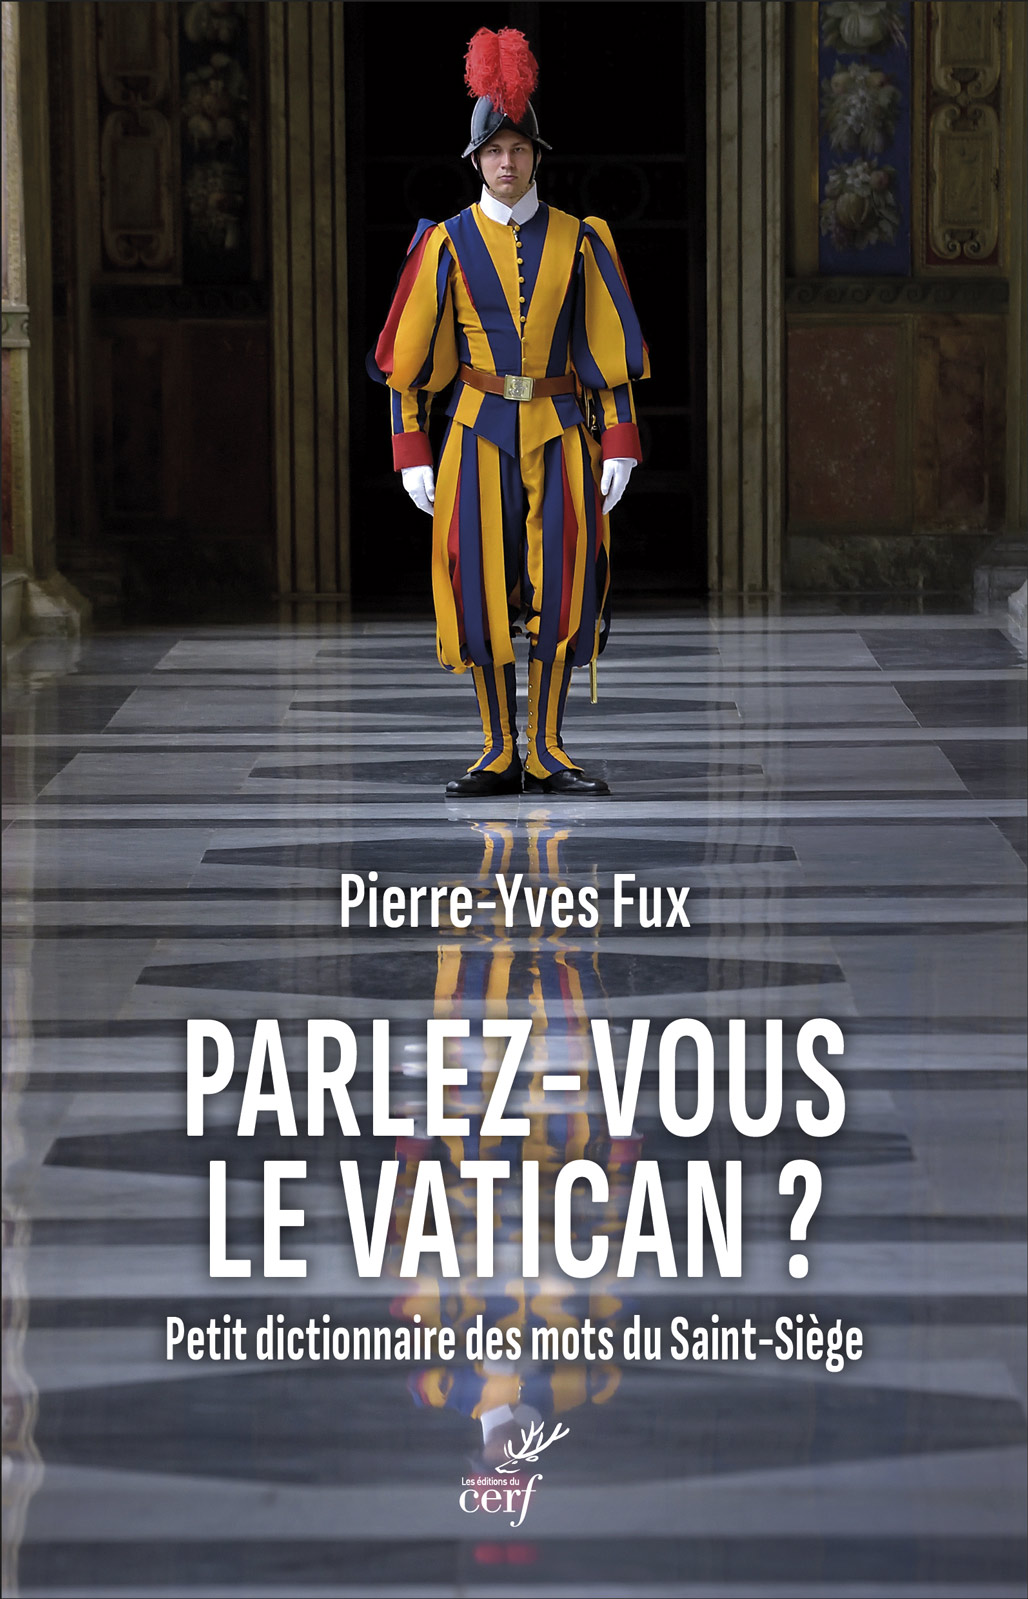 Parlez-vous Vatican